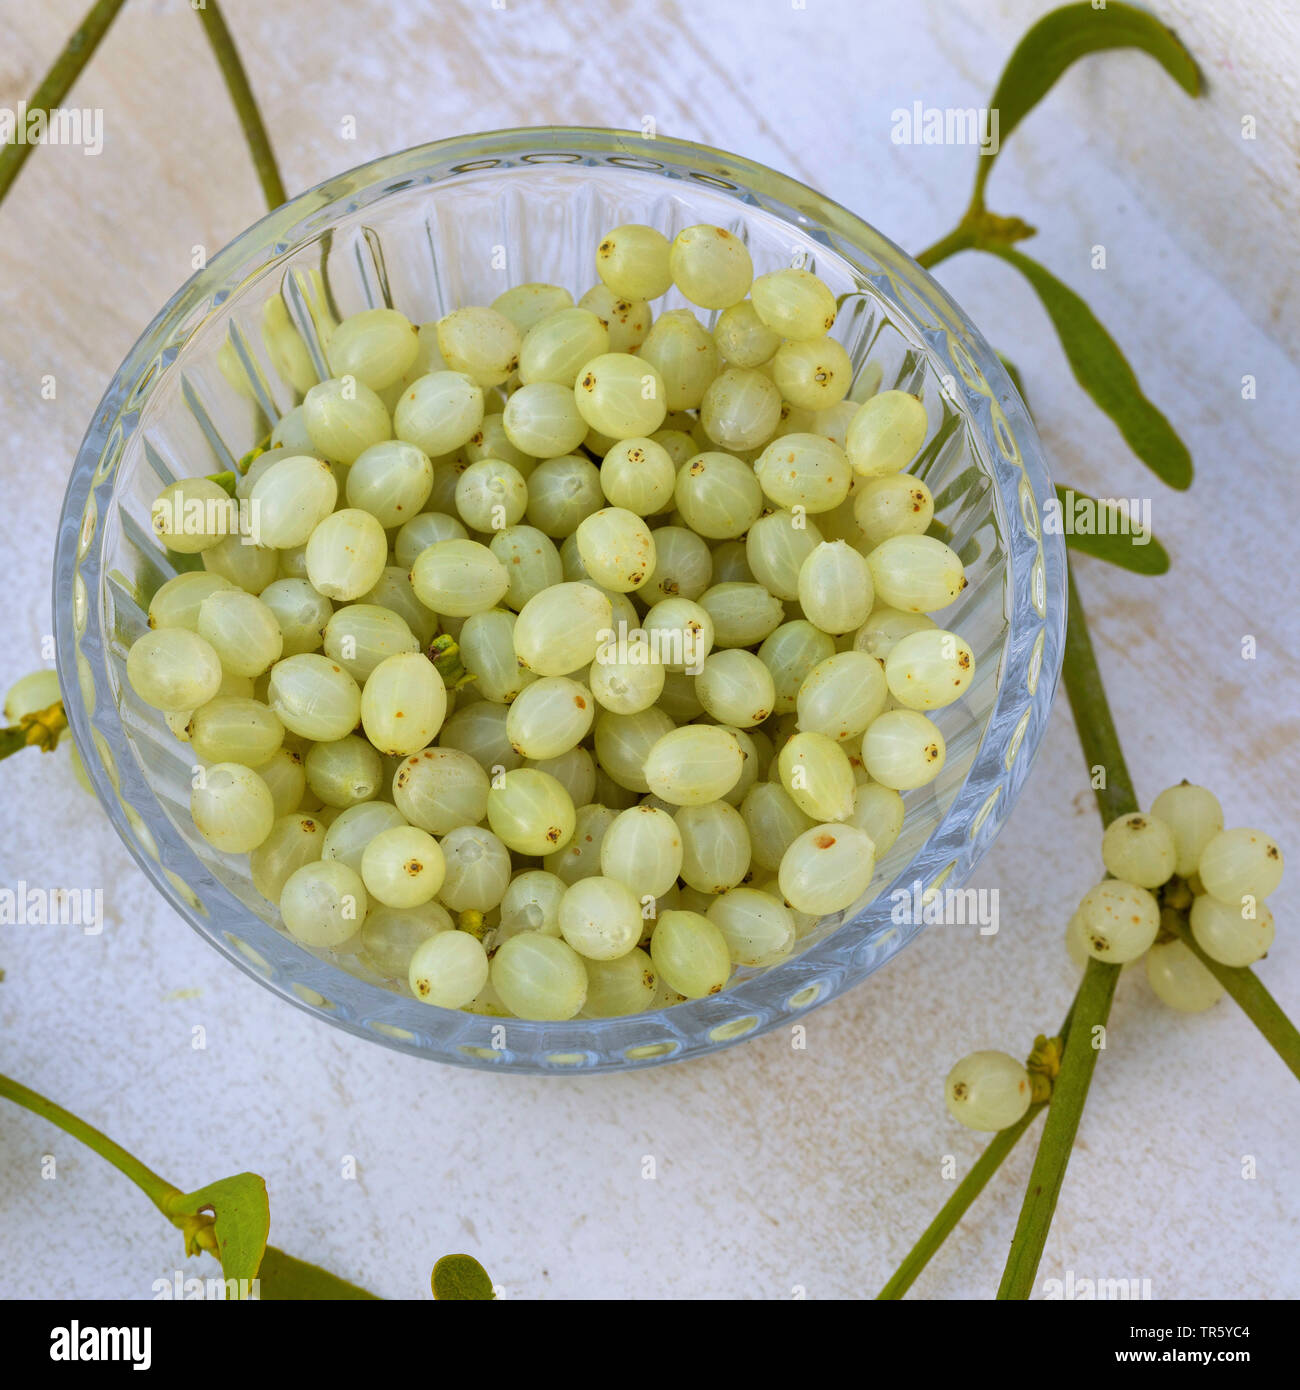 mistletoe (Viscum album subsp. album, Viscum album), collected berries in a bowl, Germany Stock Photo